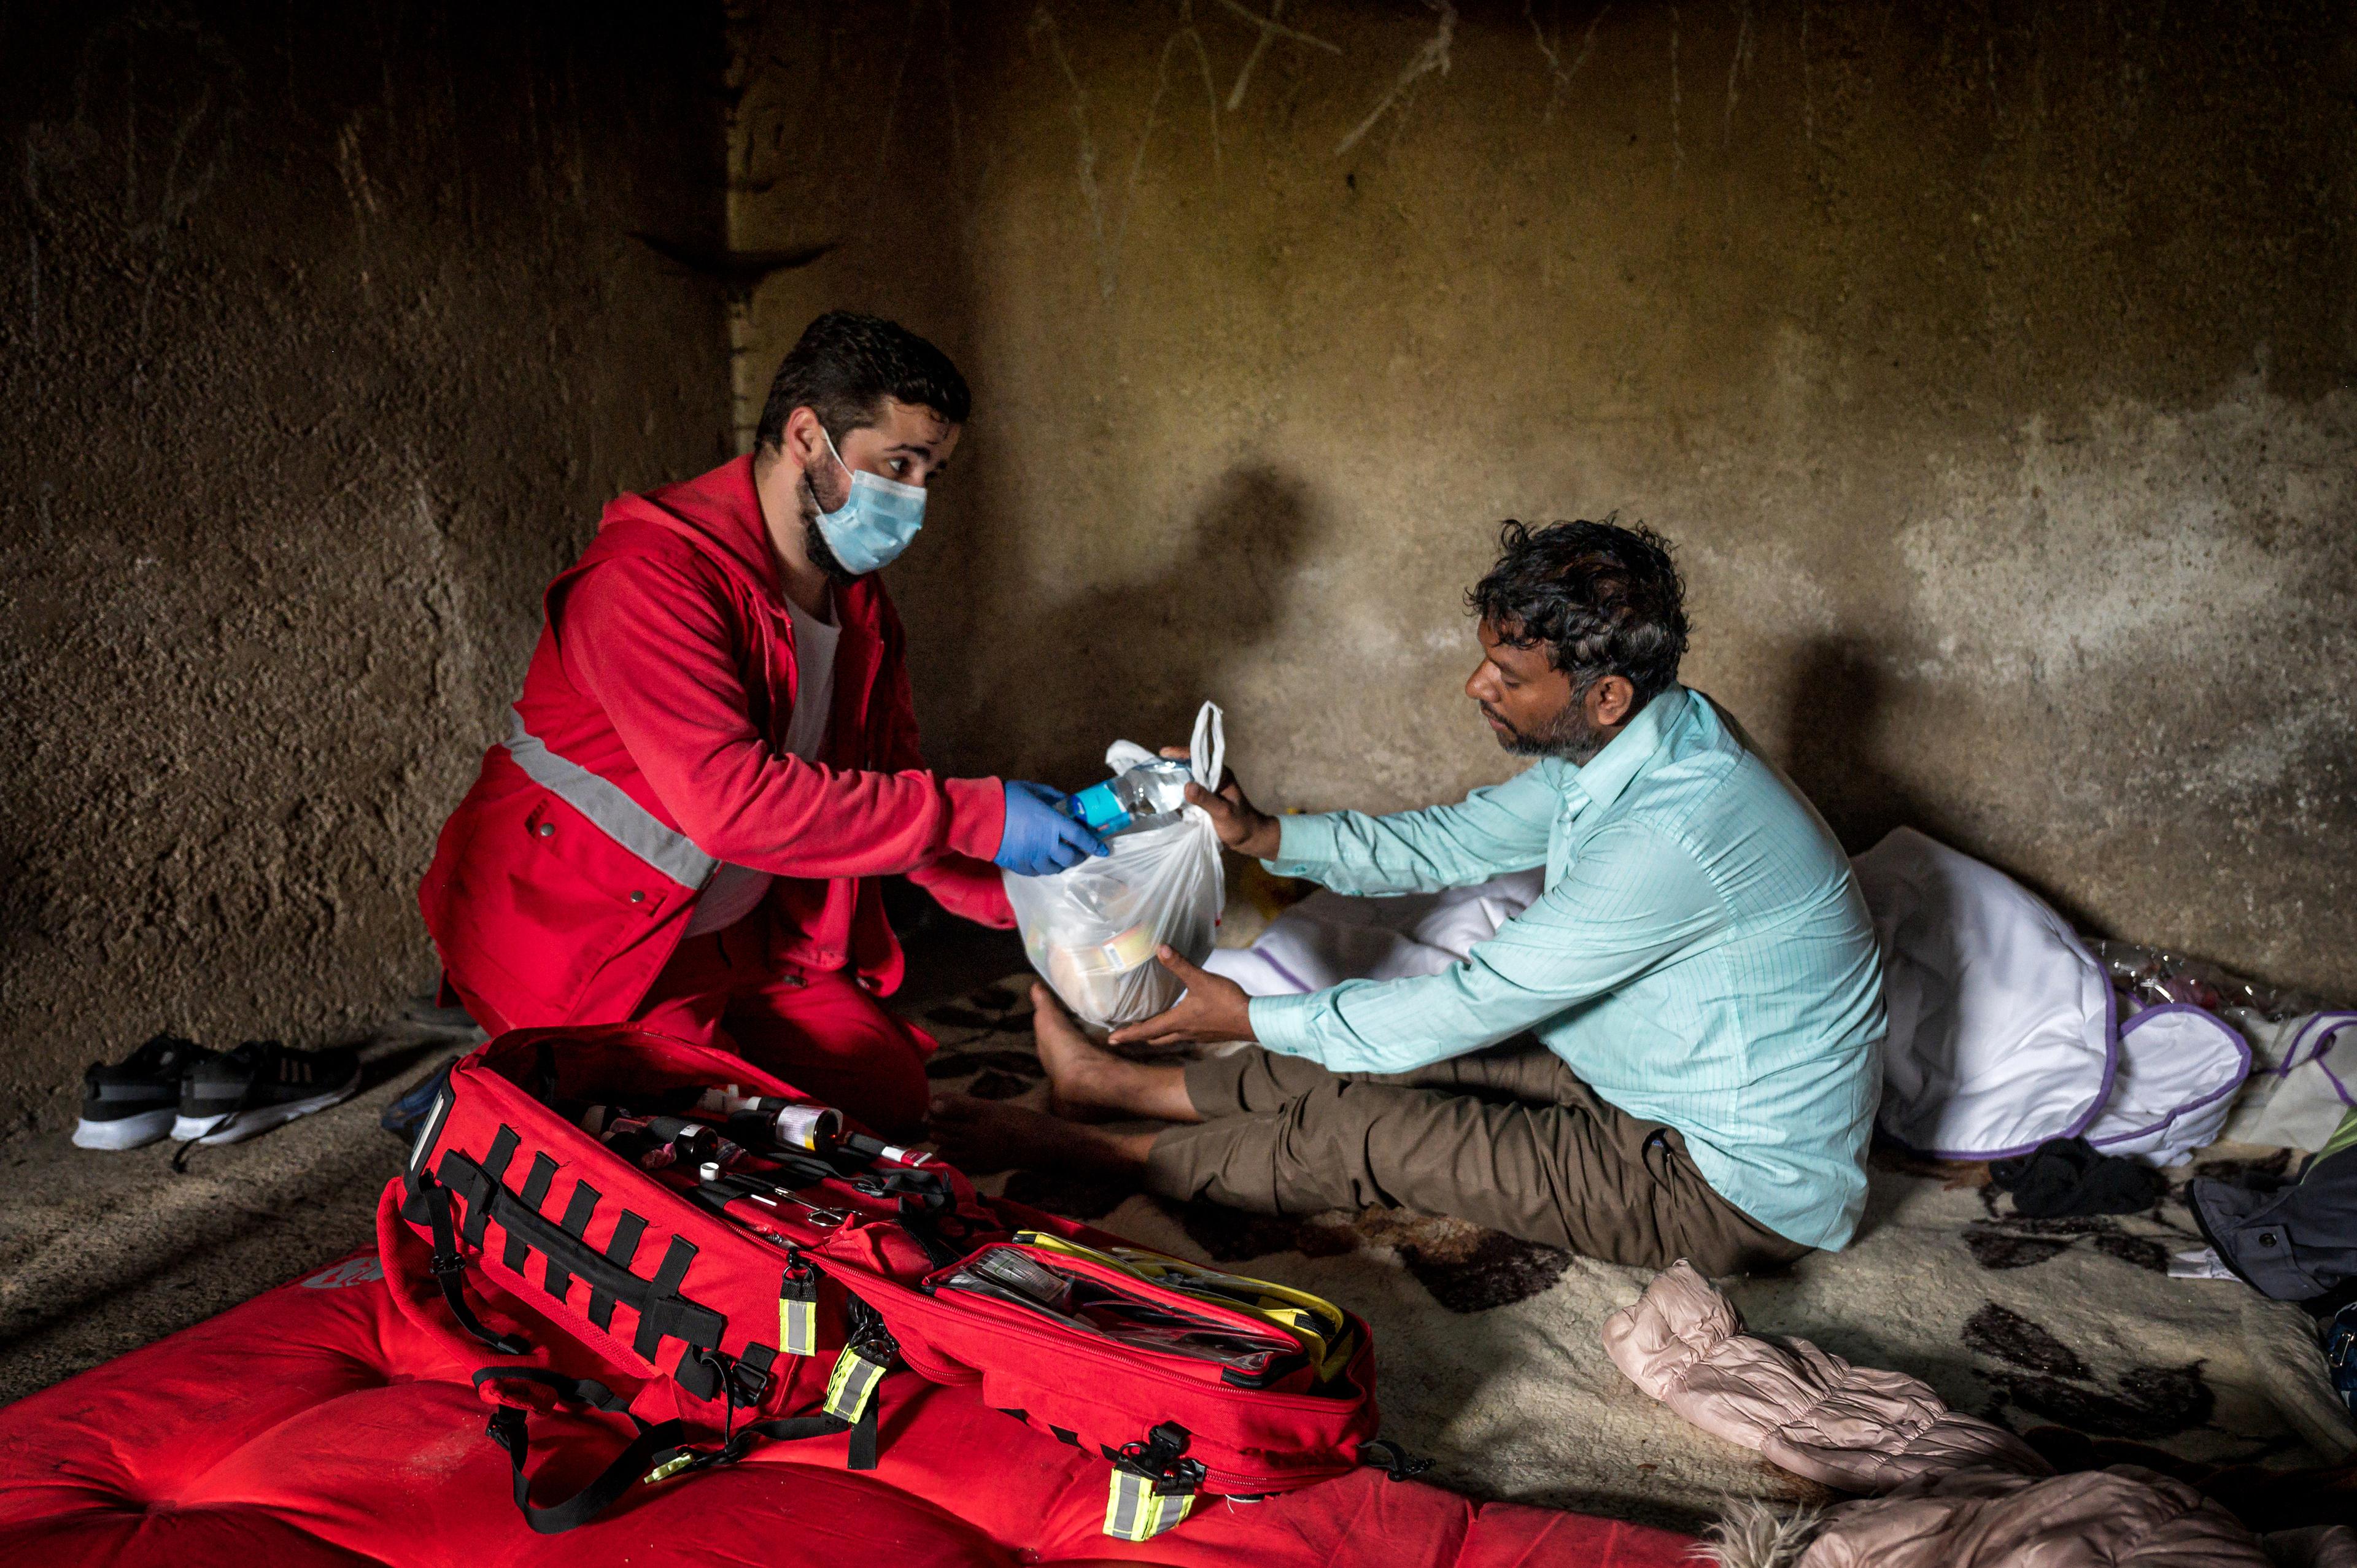 L'immagine mostra un dipendente del movimento della Croce Rossa in uniforme rossa, che consegna forniture a un uomo seduto in una stanza scarsamente arredata, raffigurando un'operazione sul campo o un contesto di assistenza umanitaria.